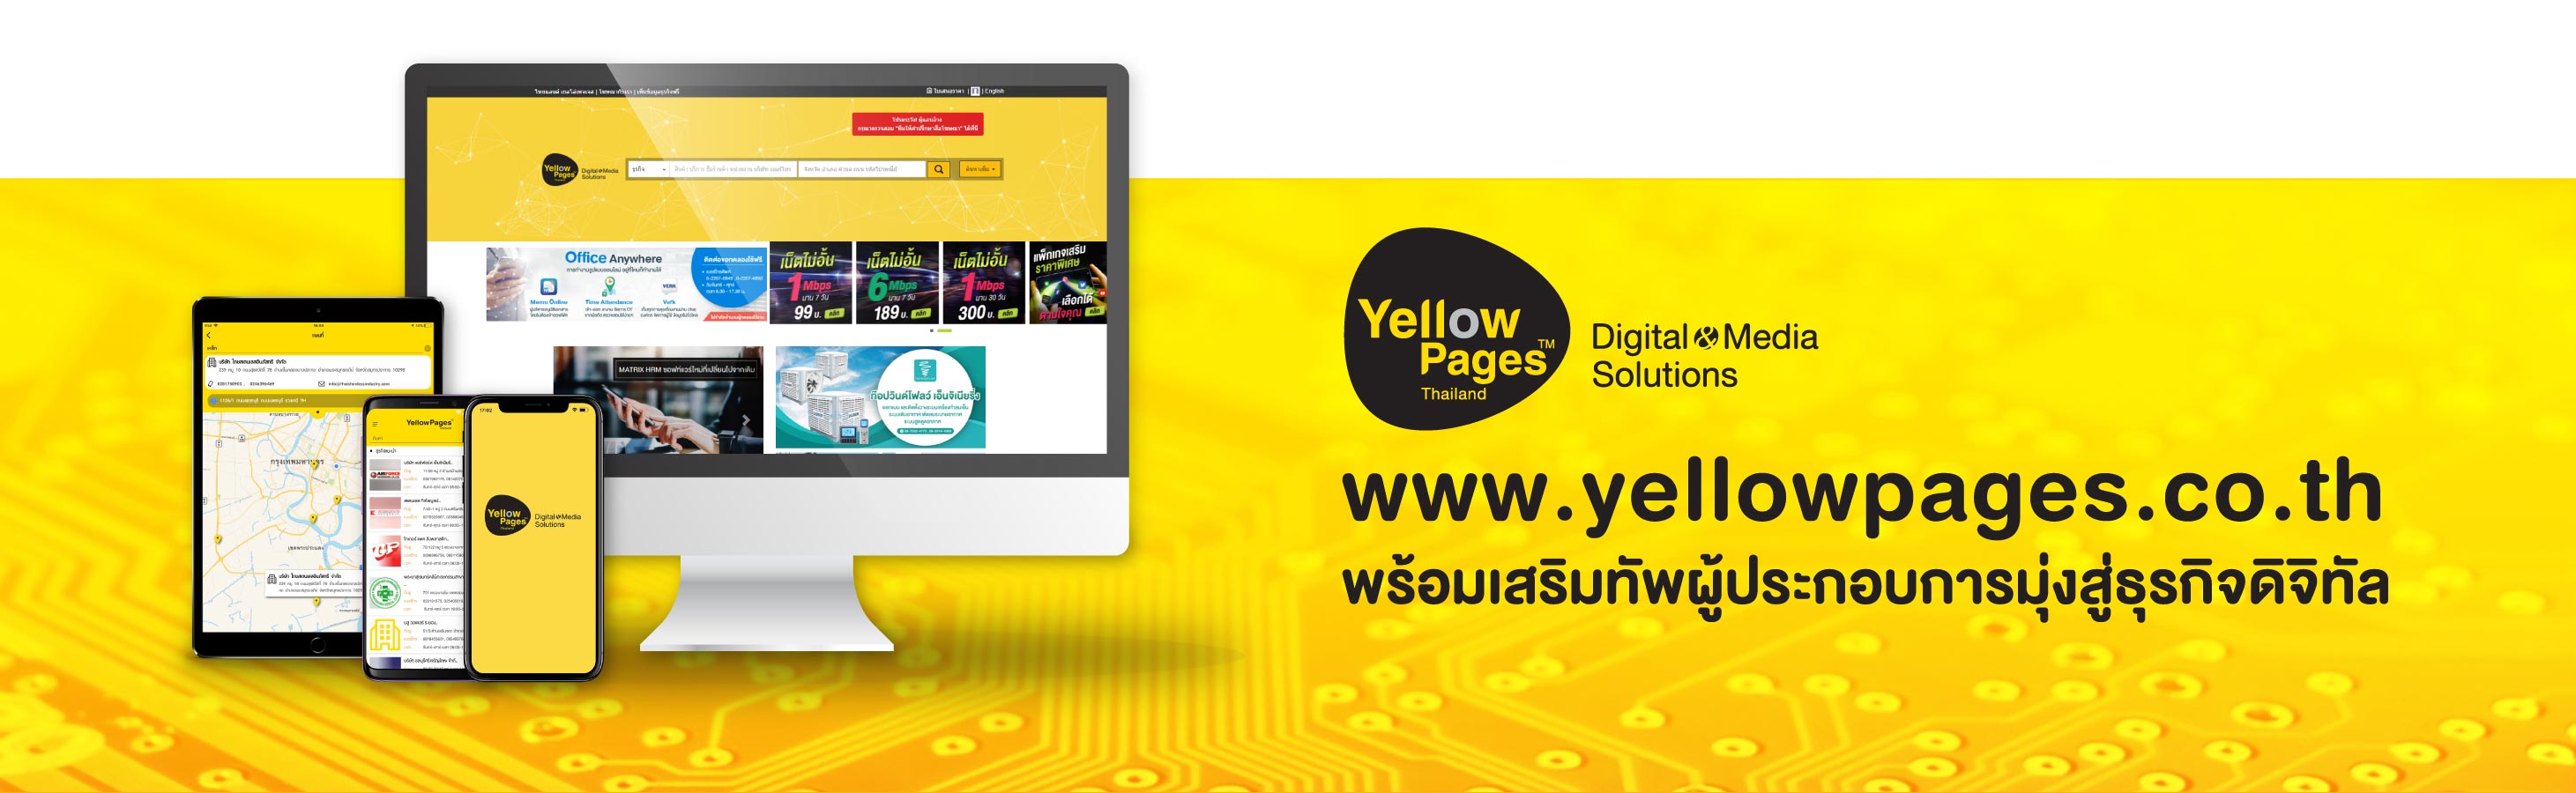 โฆษณาข้อมูลธุรกิจดิจิทัลกับ Thailand YellowPages